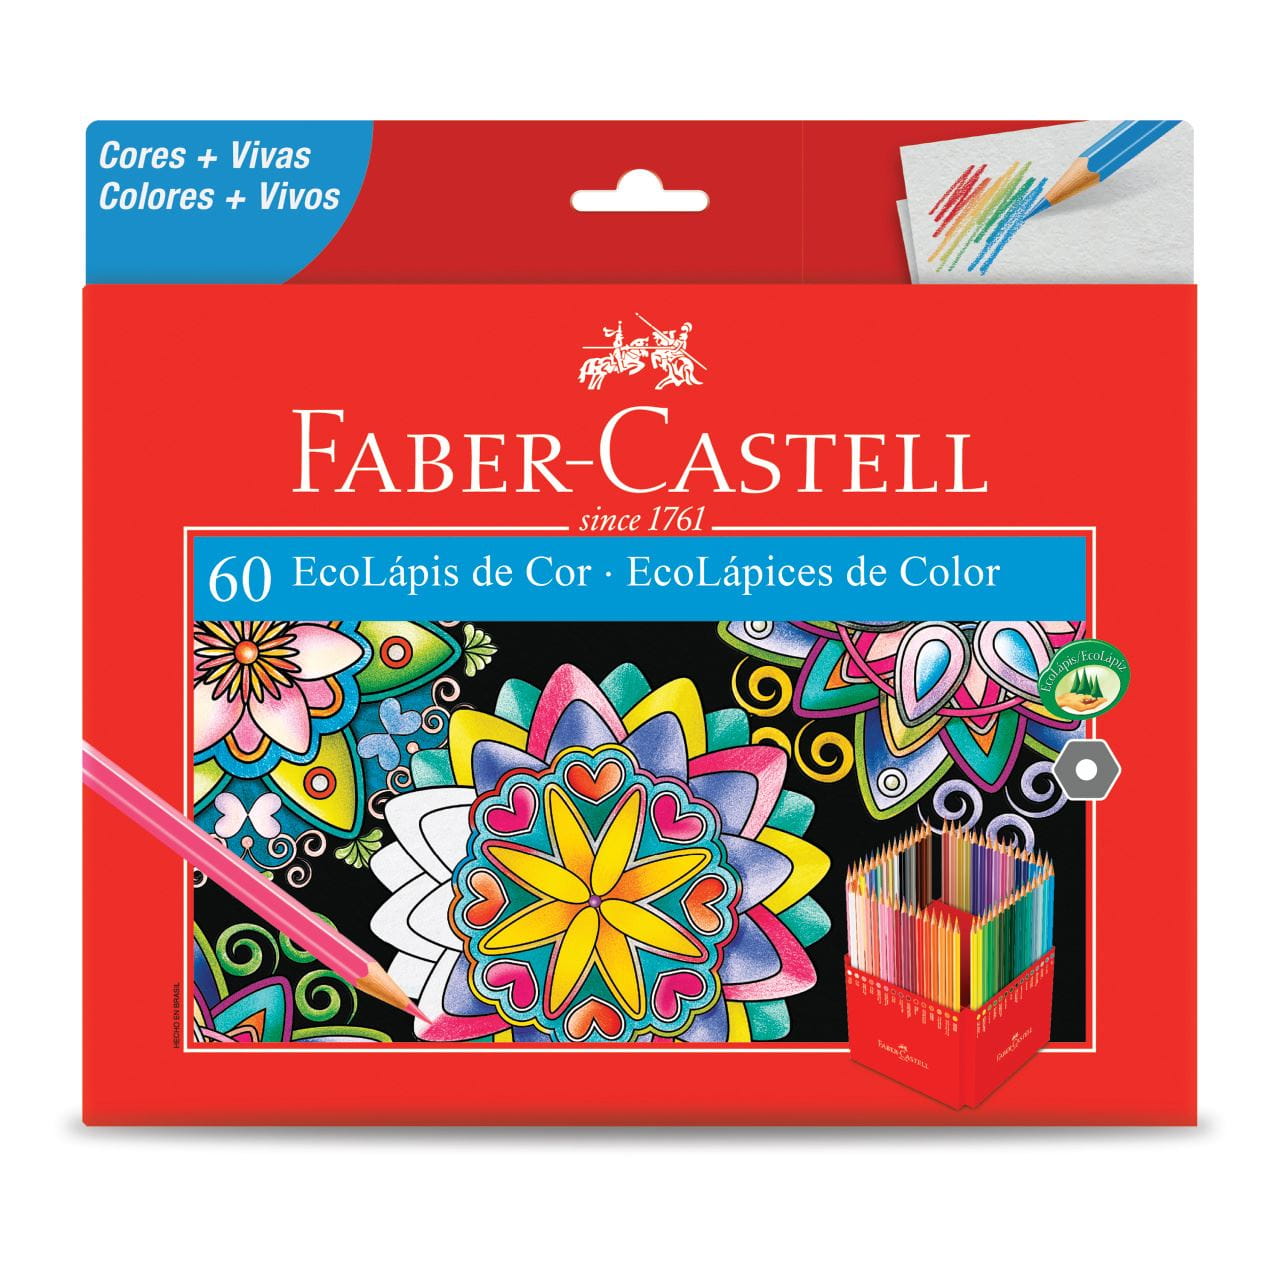 Faber-Castell - Ecolapis de Cor 60 Cores